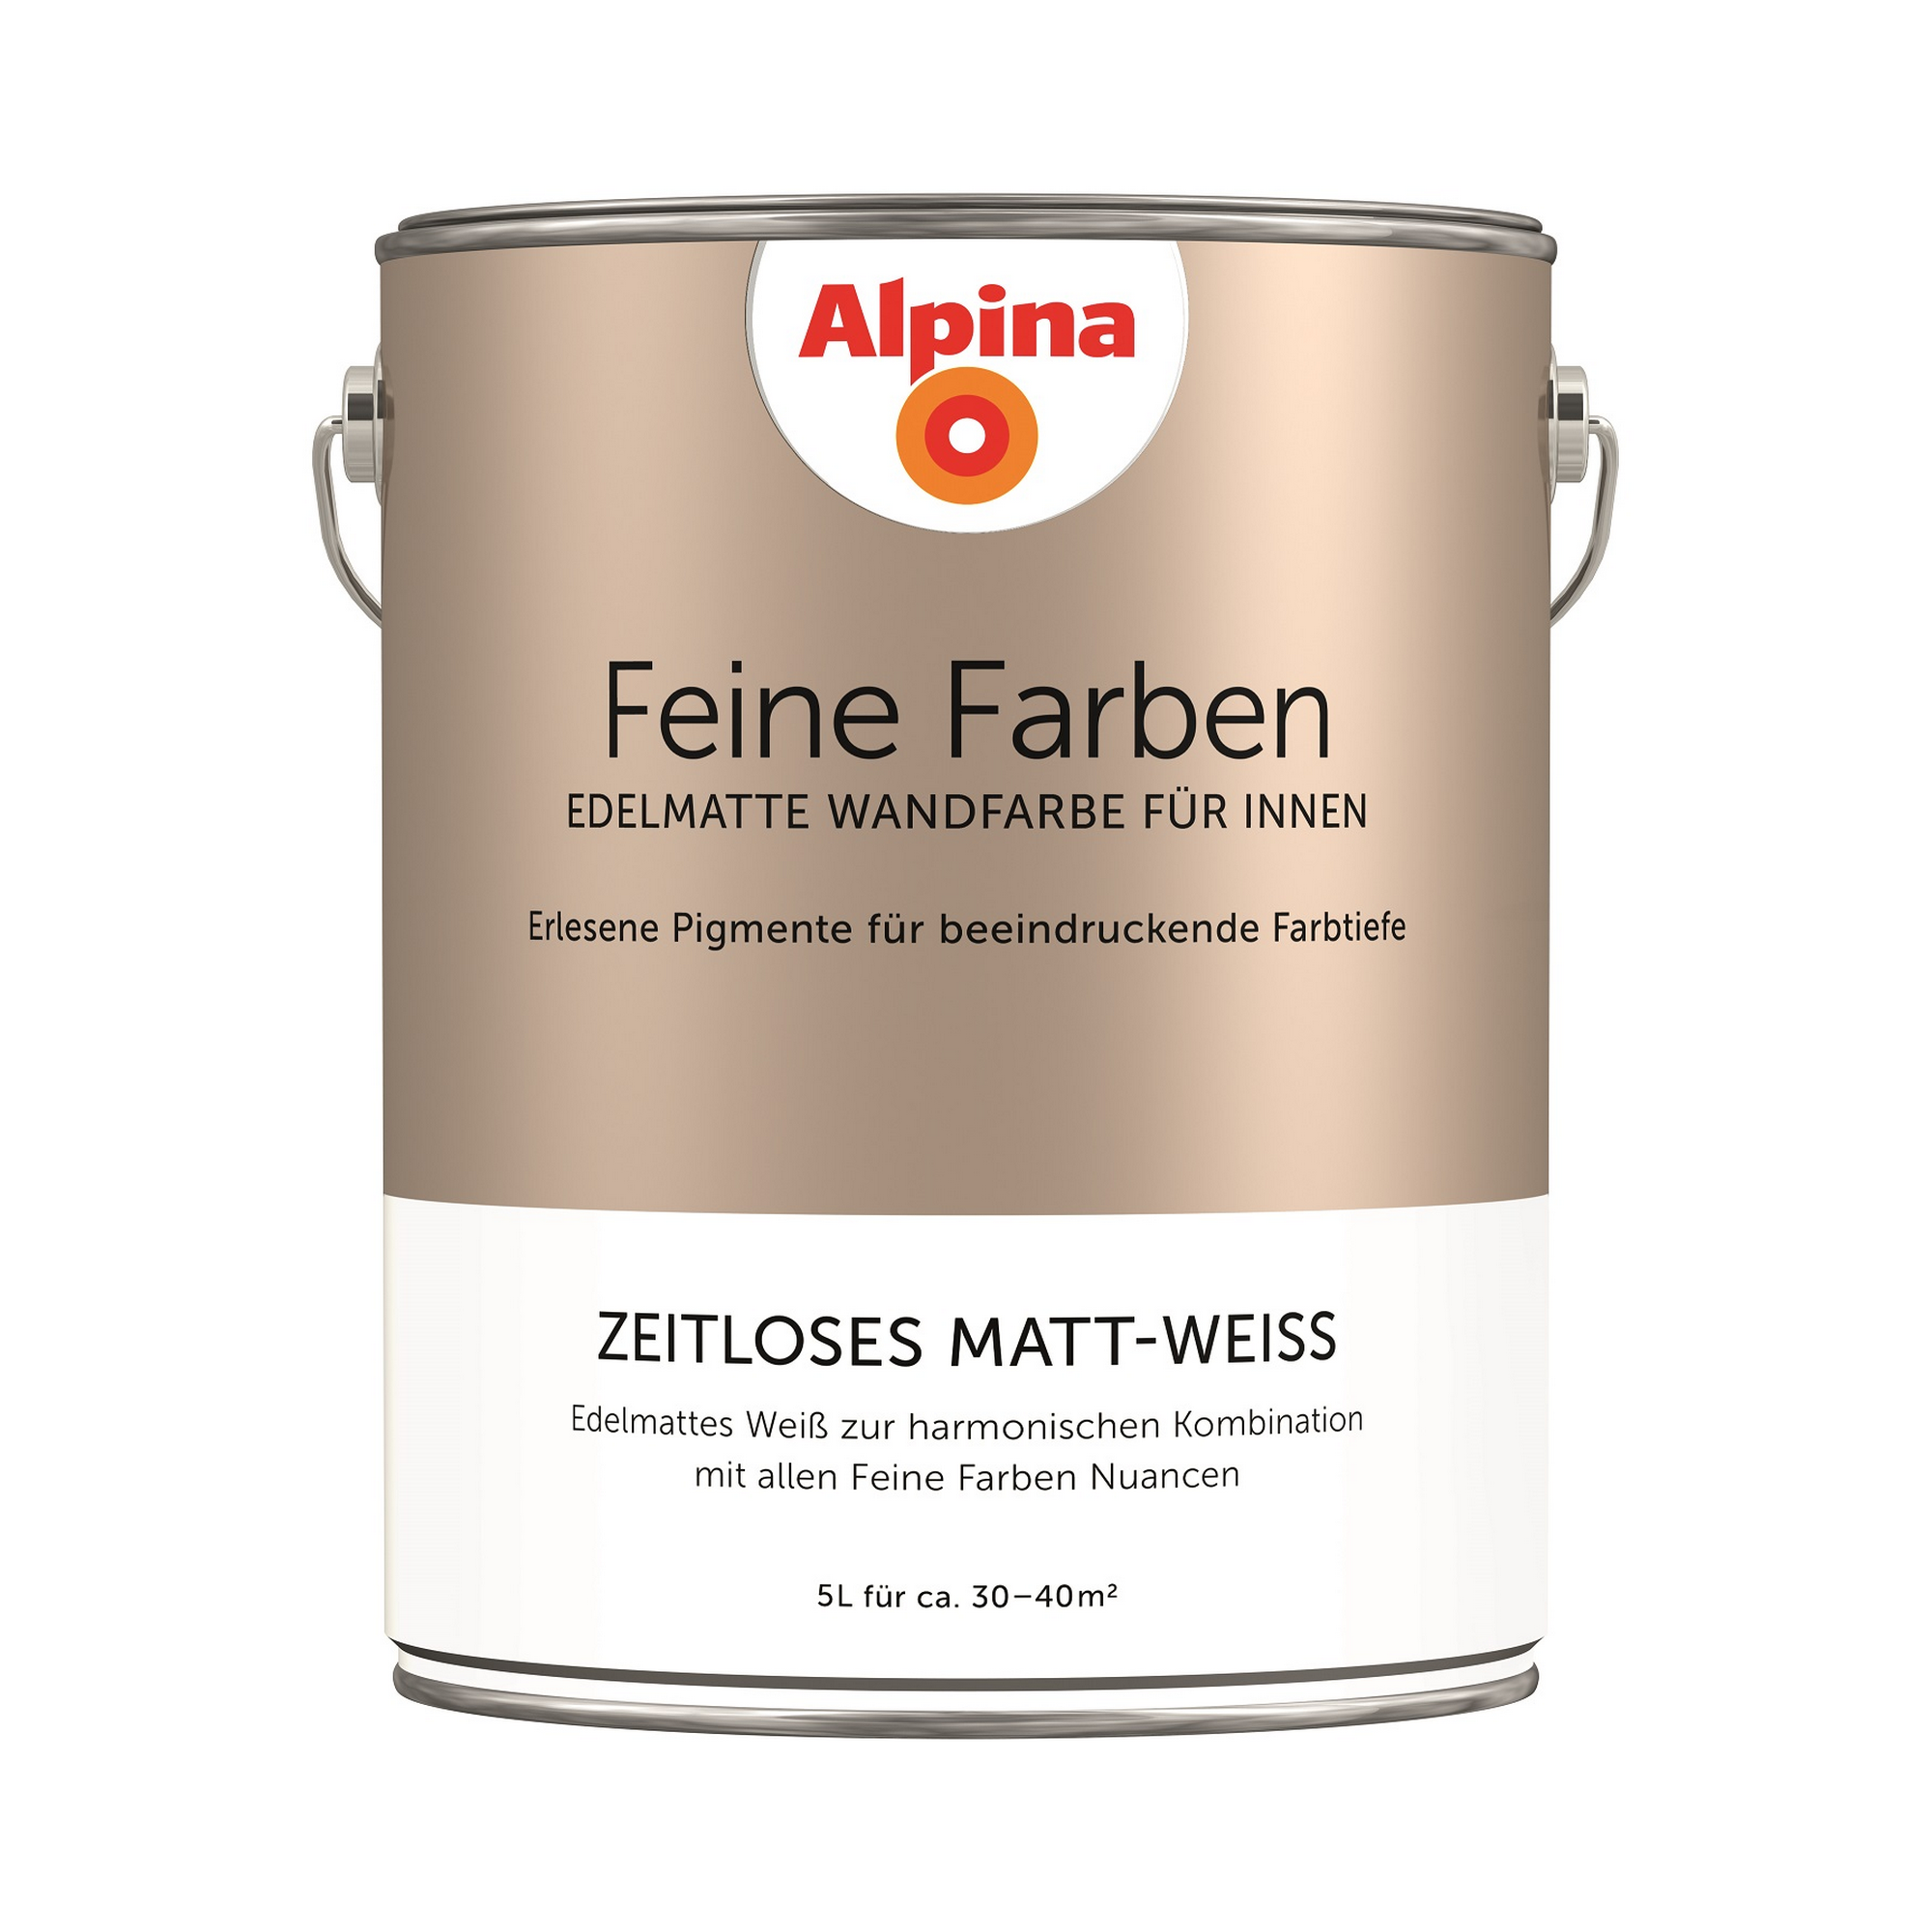 Feine Farben 'Zeitloses Matt-Weiß' matt 5 l + product picture